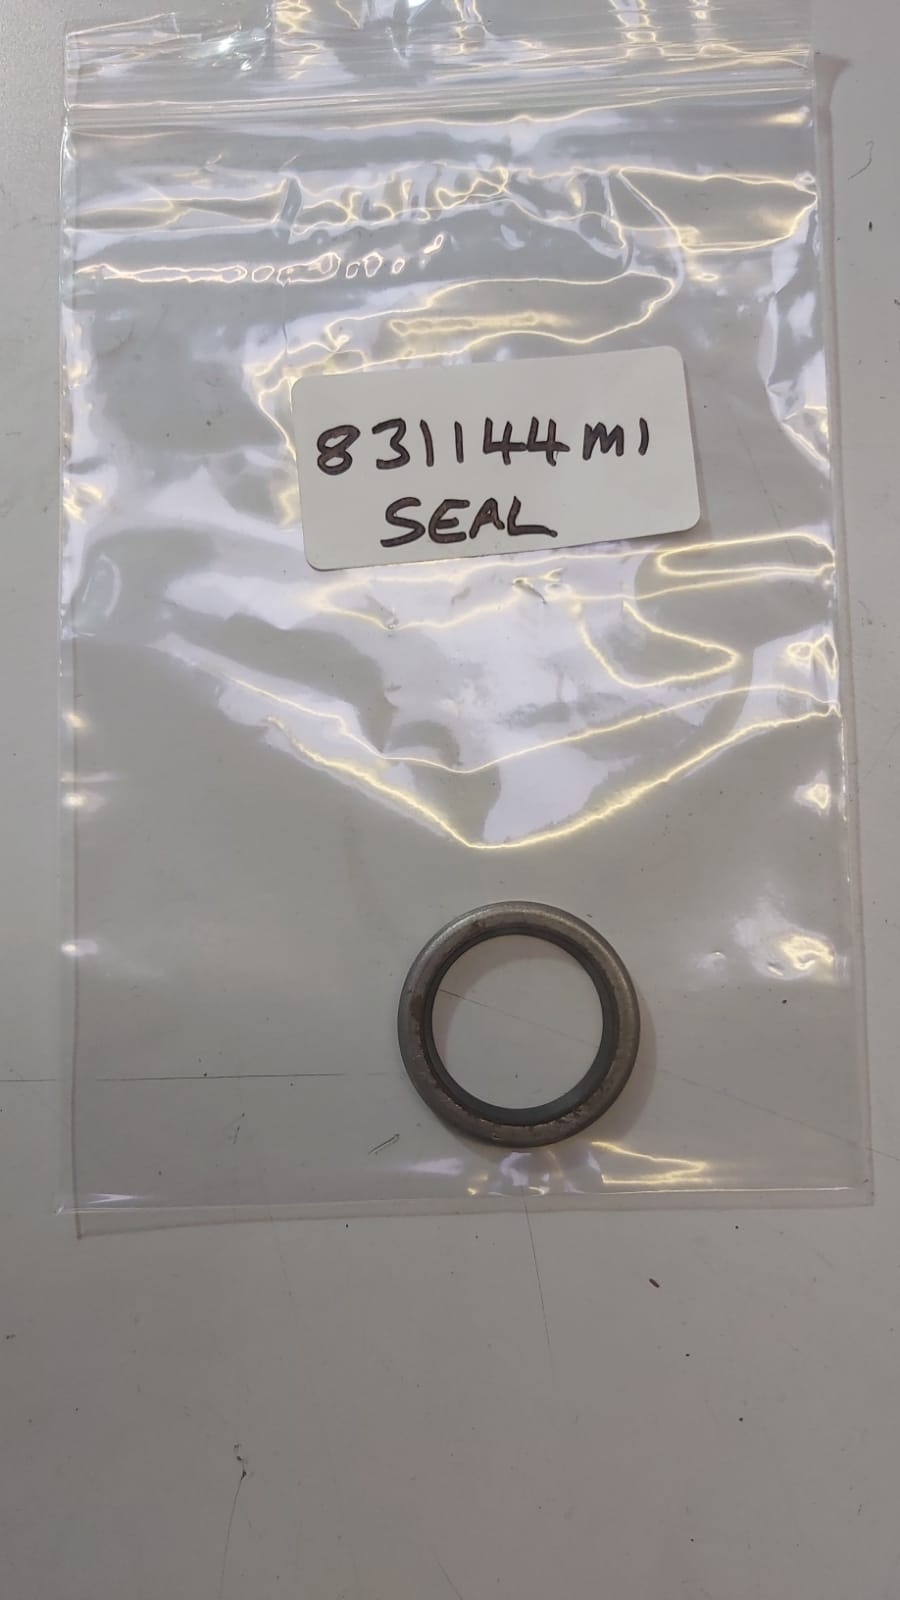 seal-831144m1